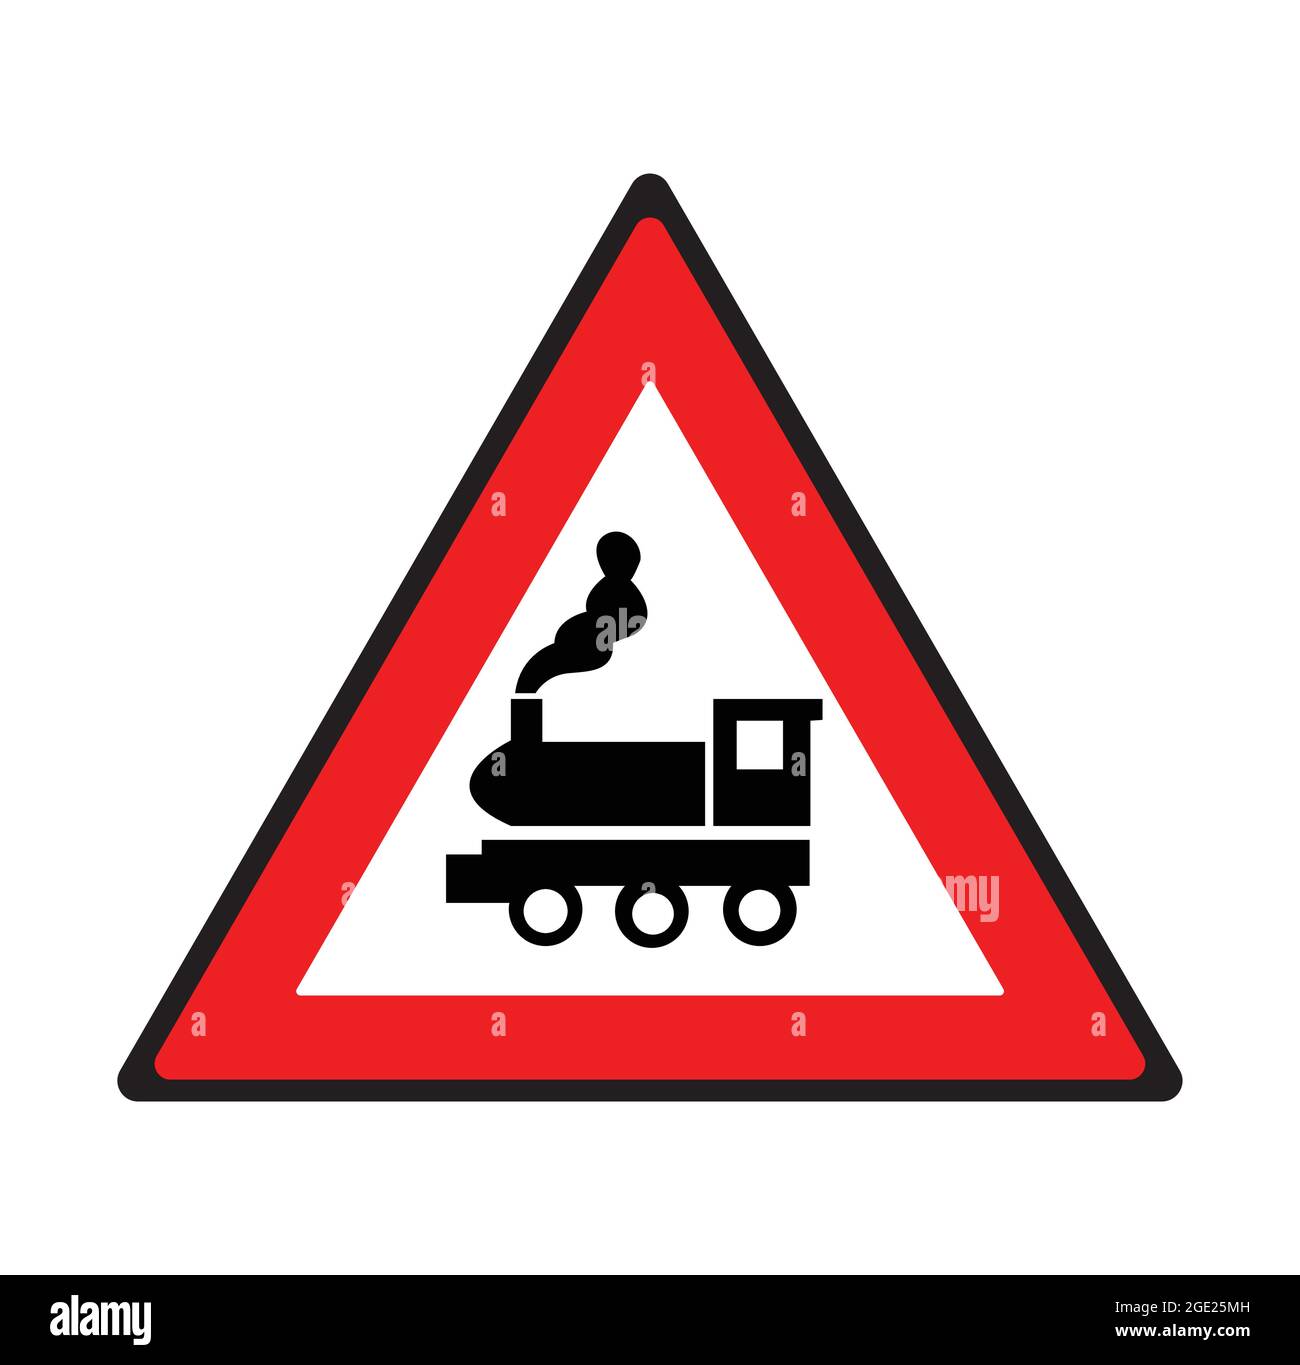 Unbewachtes Straßenschild für Bahnübergänge. Sicherheitssymbol. Stock Vektor